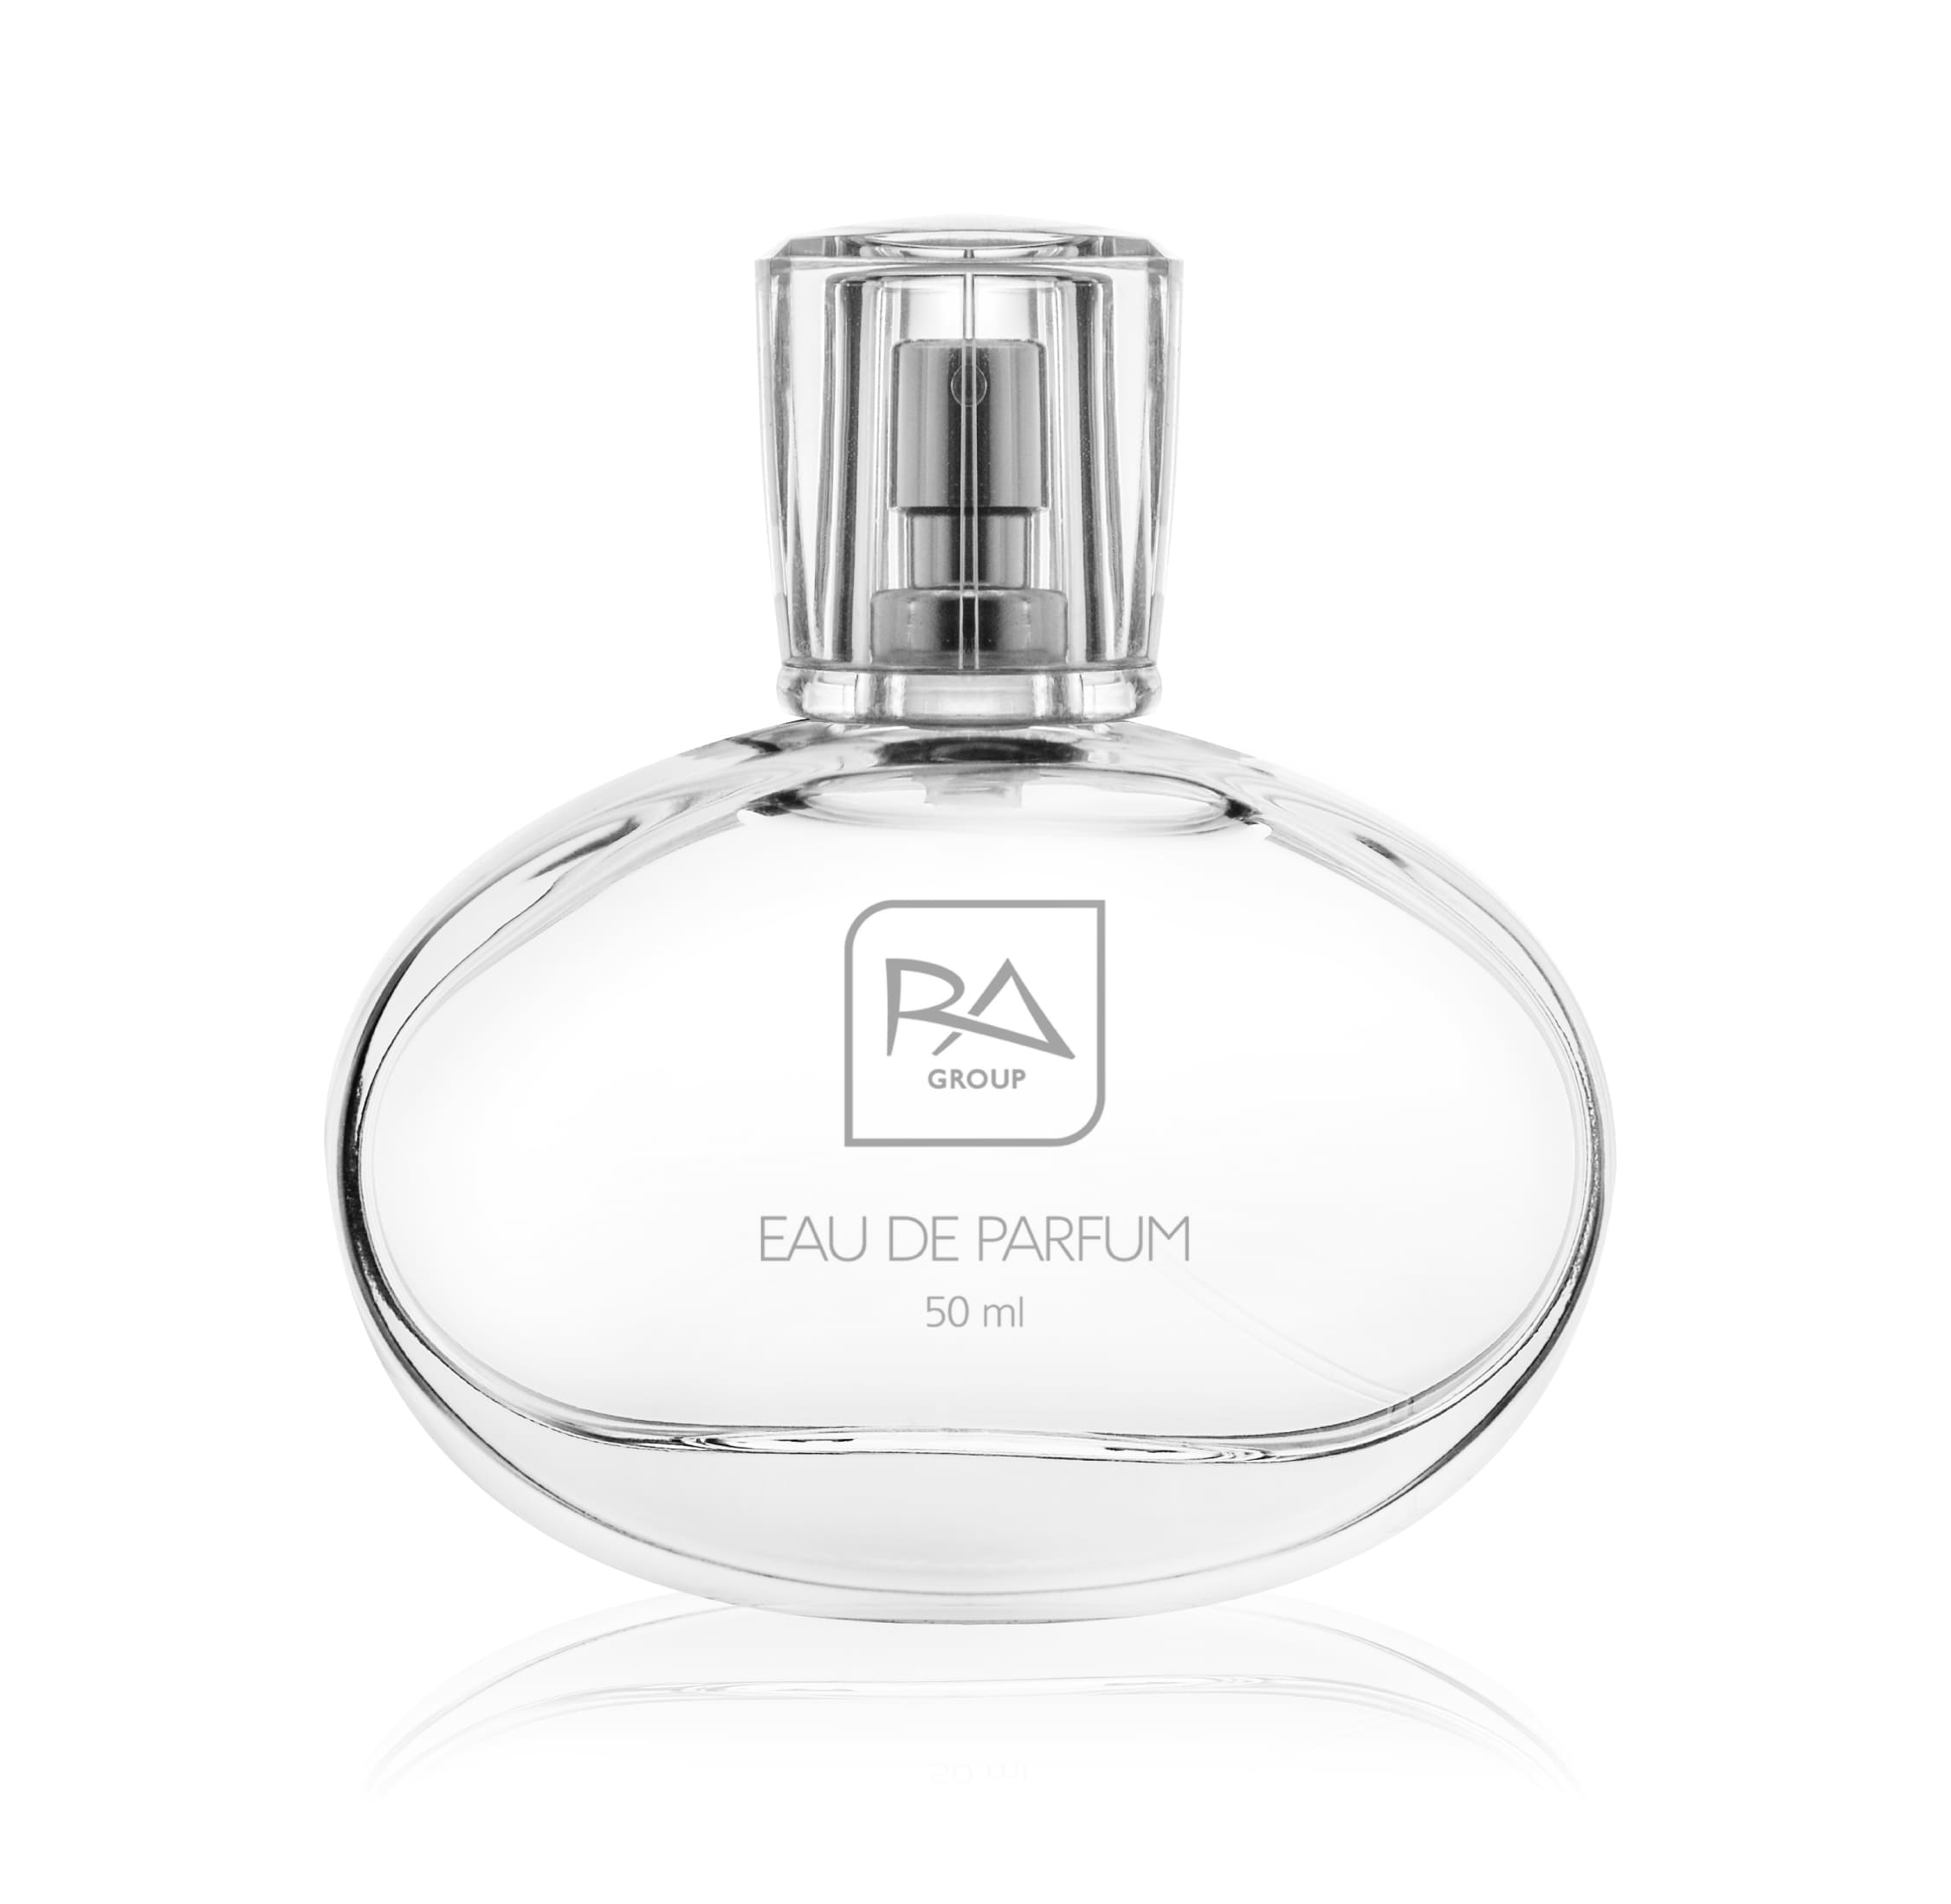 Eau de perfum RA28